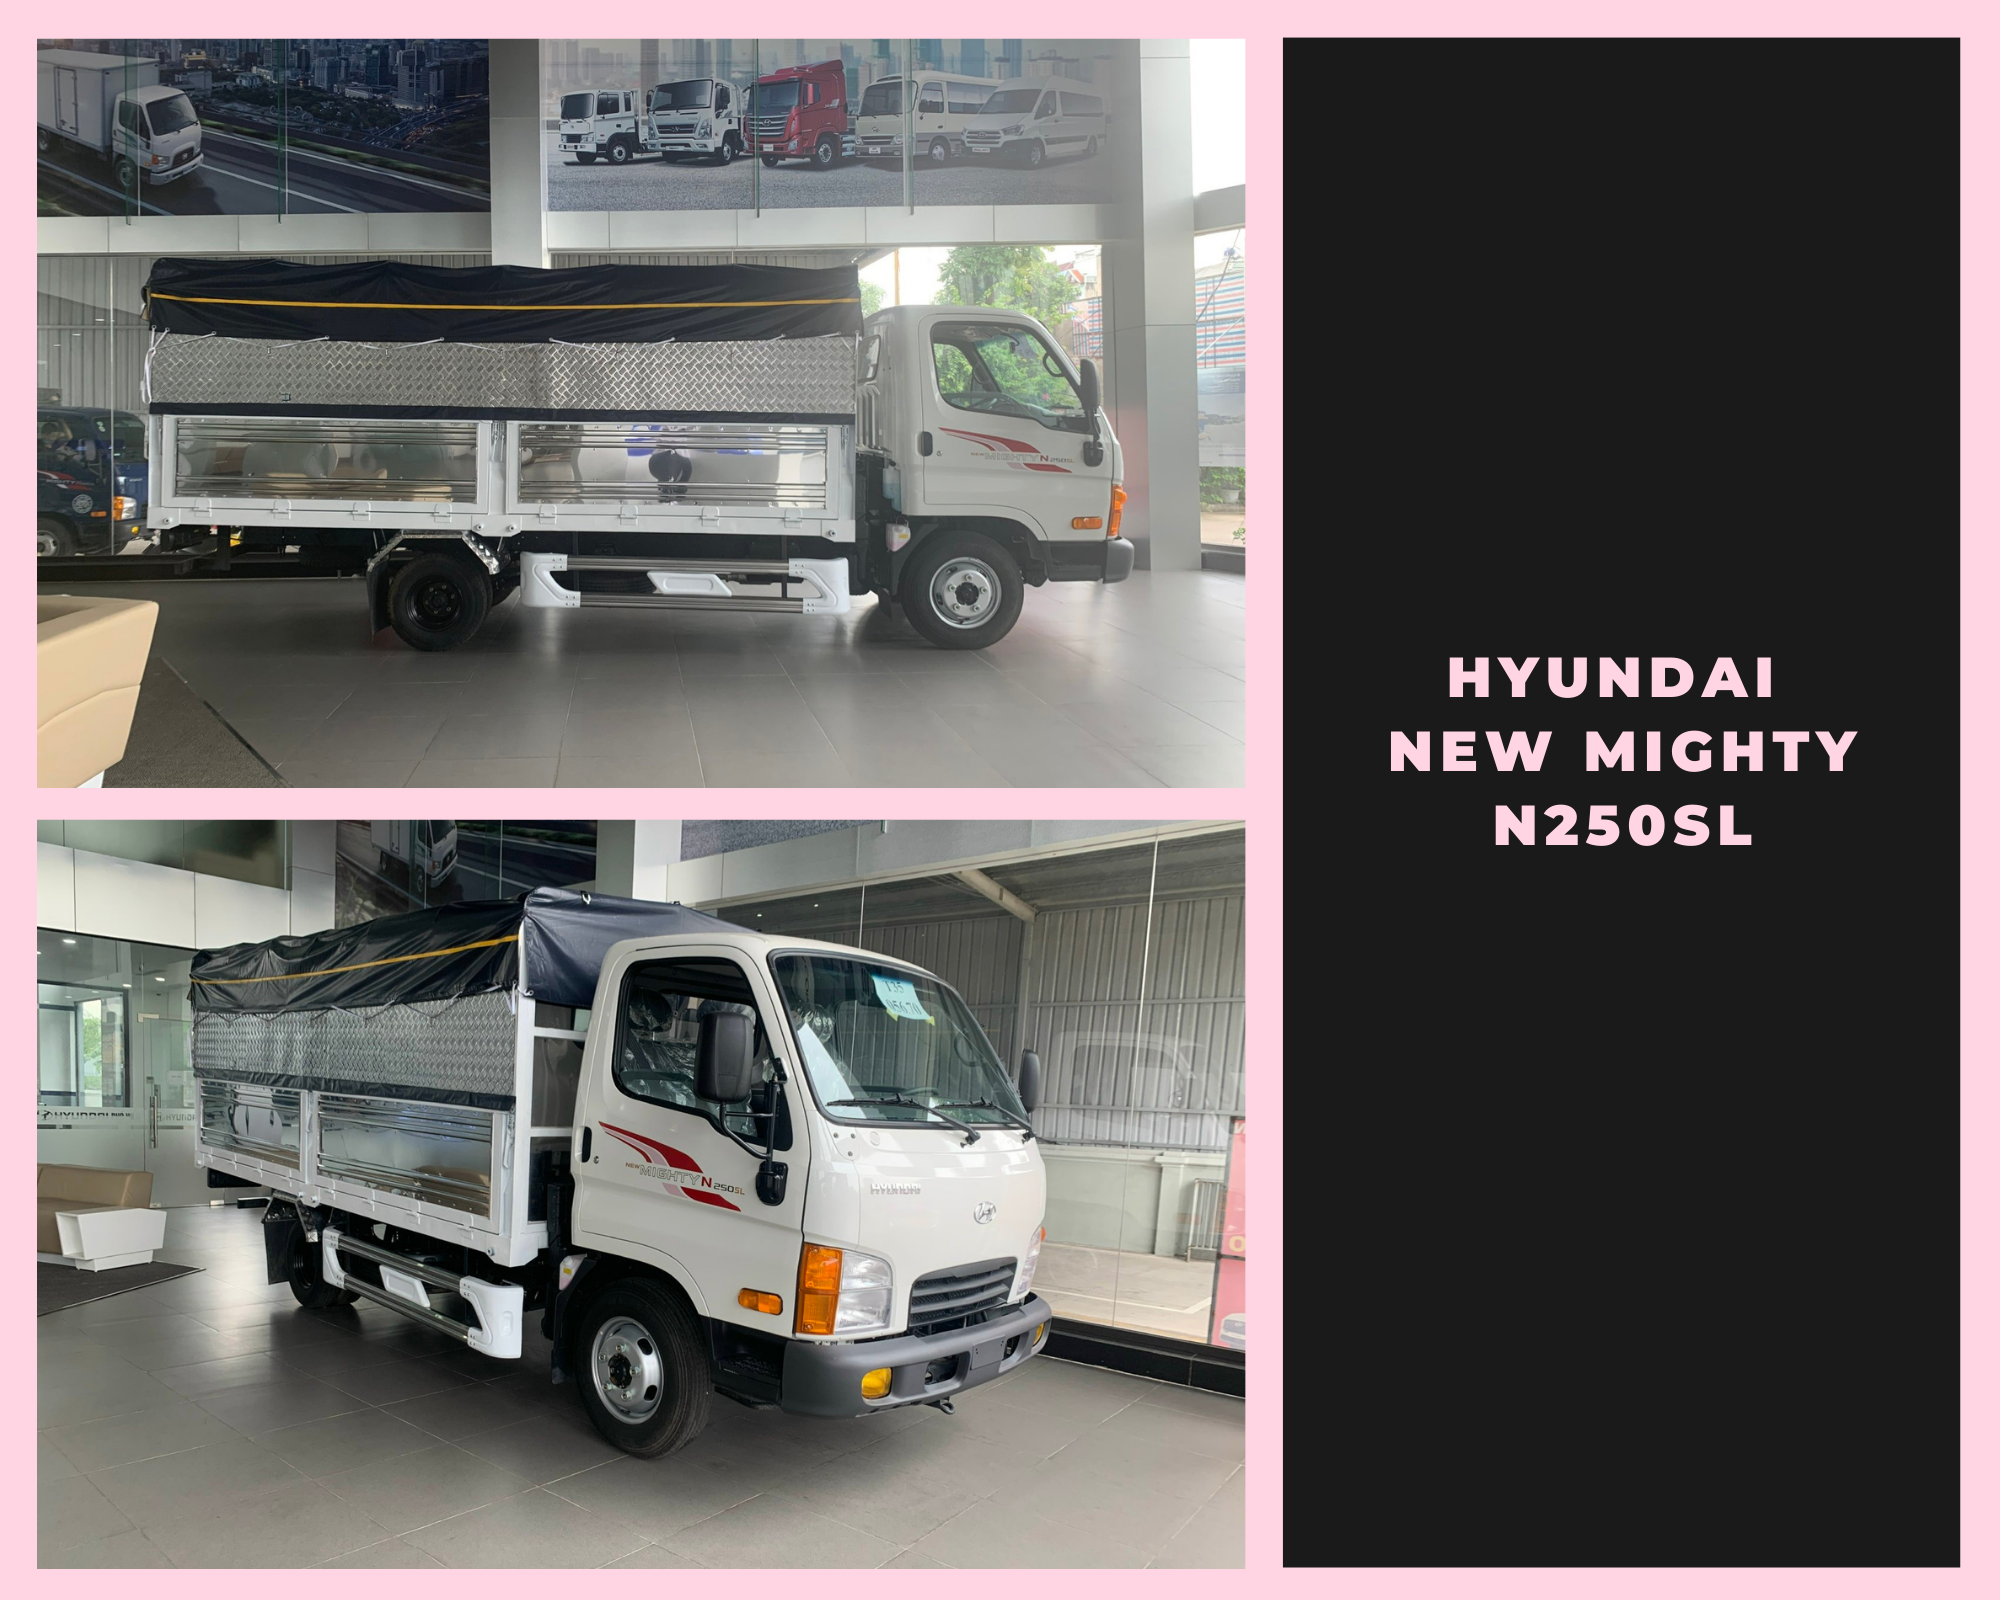 Hyundai New Mighty N250SL